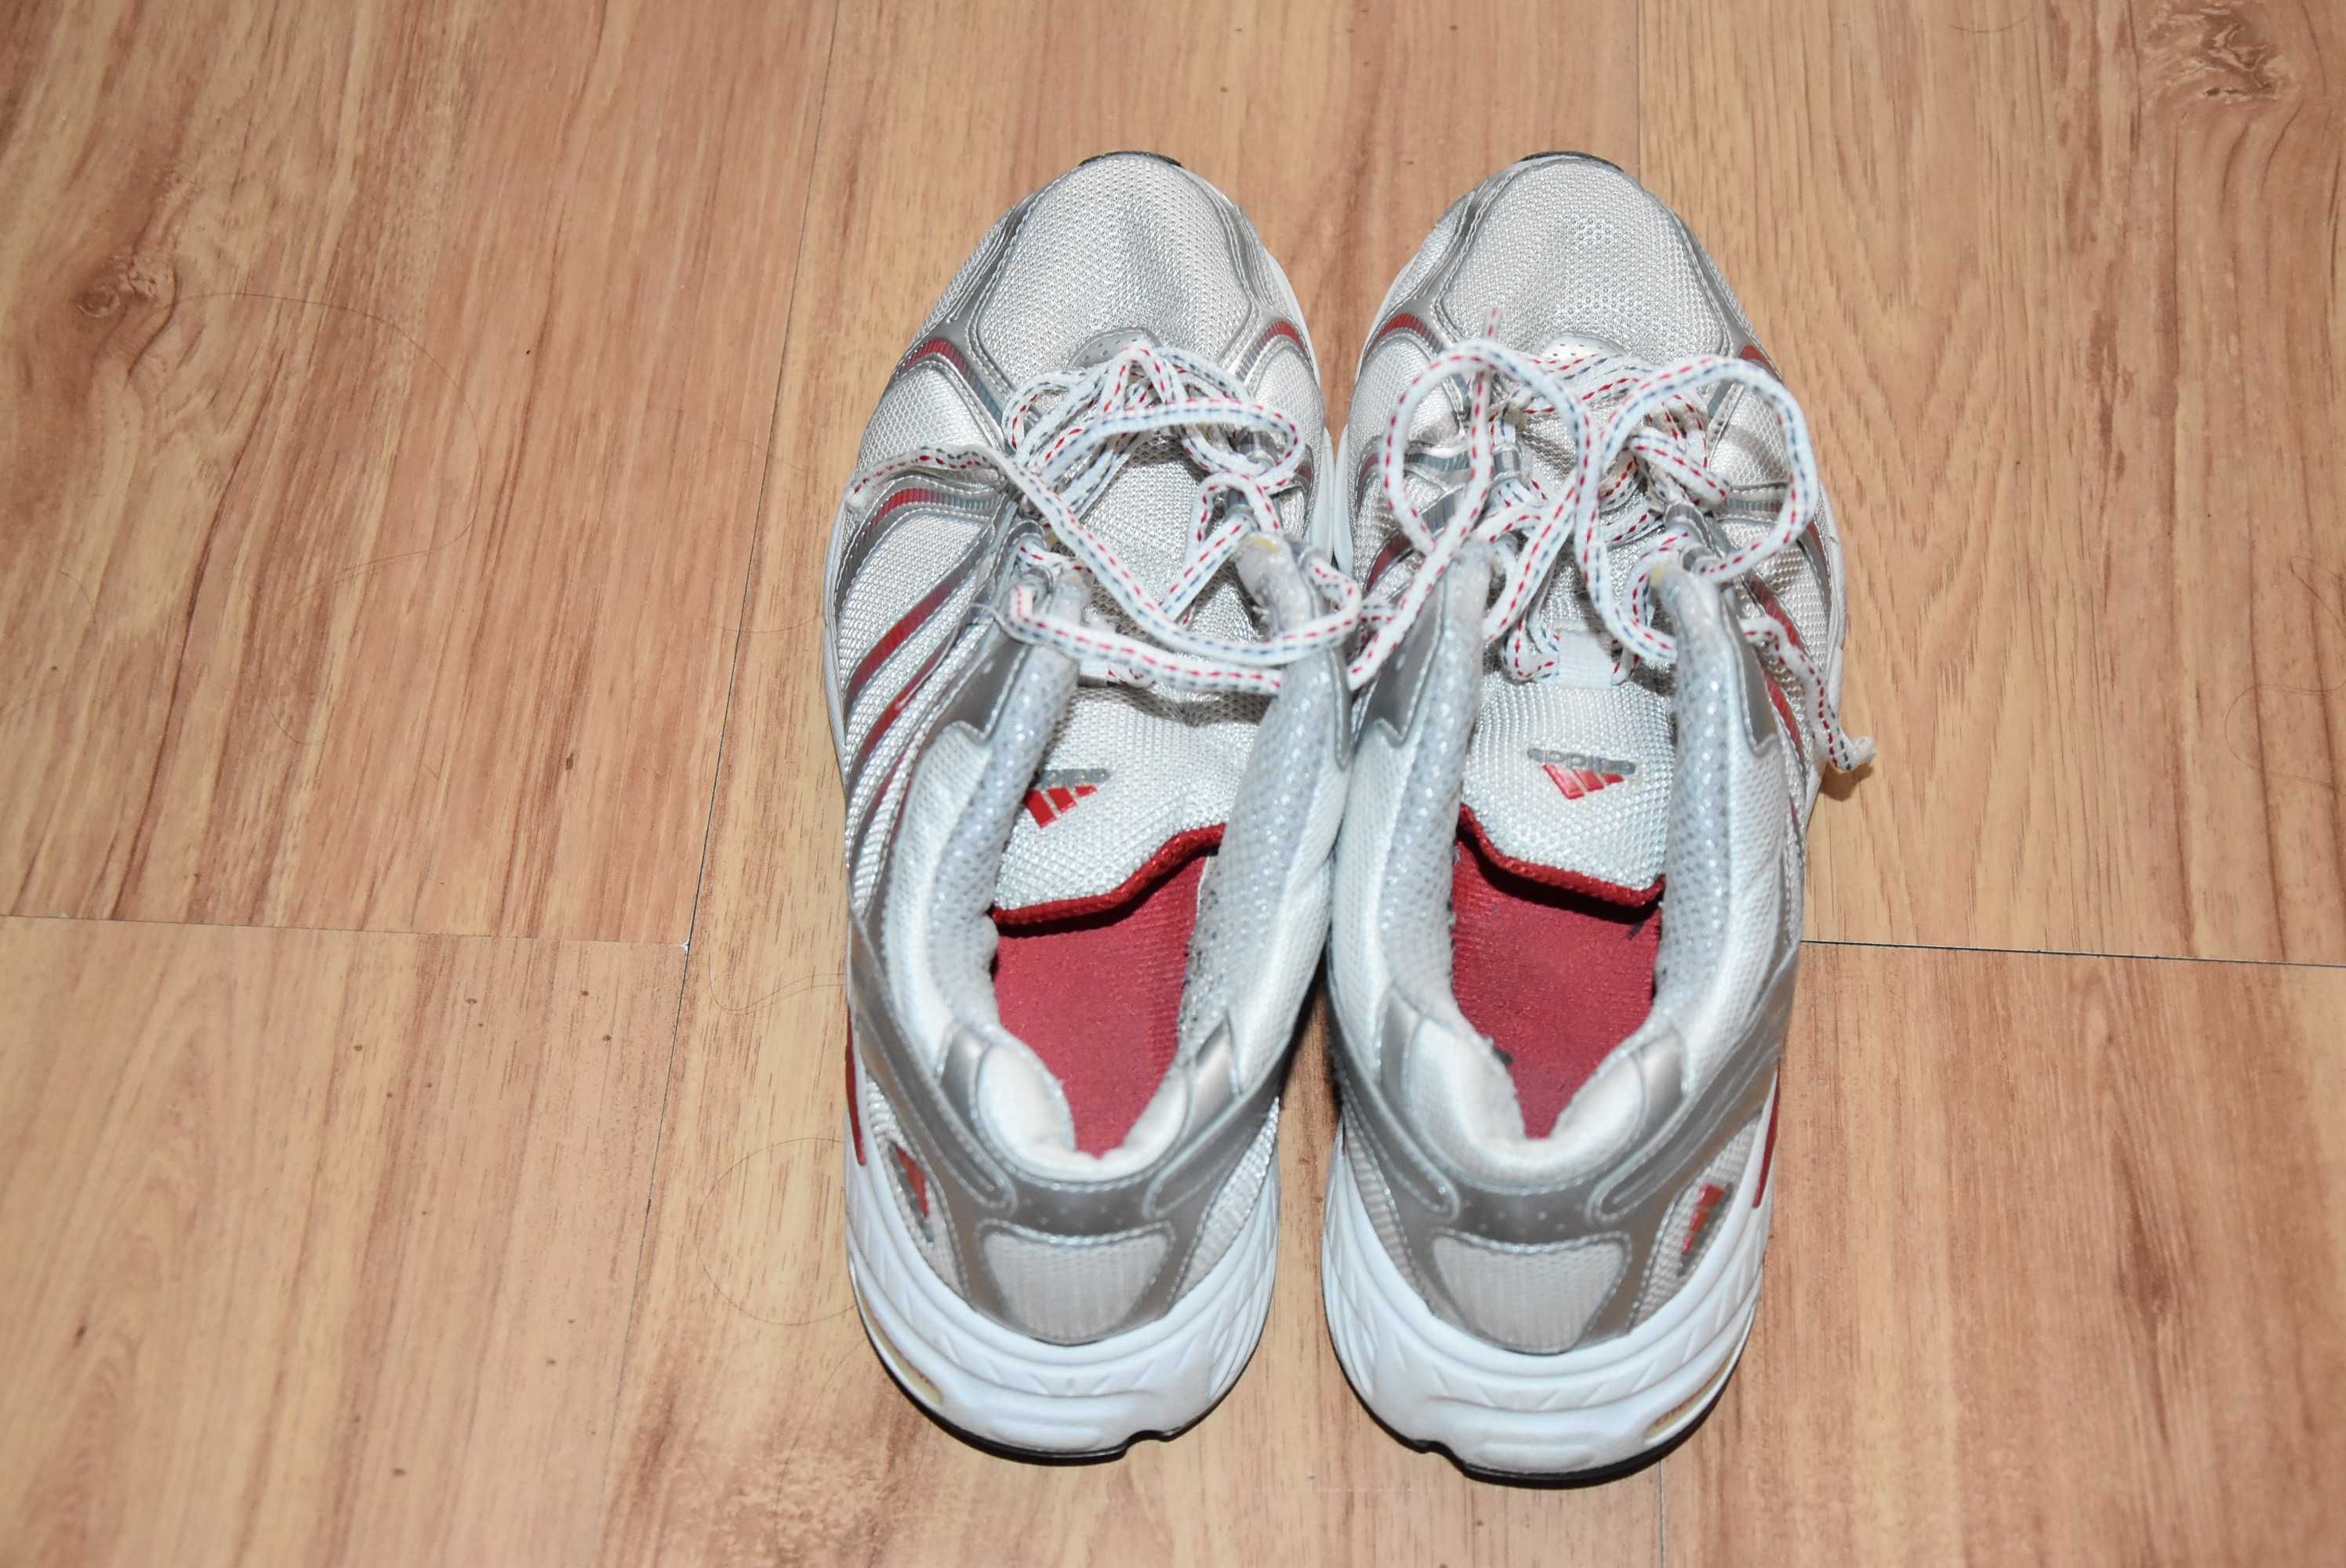 Adidasy damskie białe buty sportowe roz 38